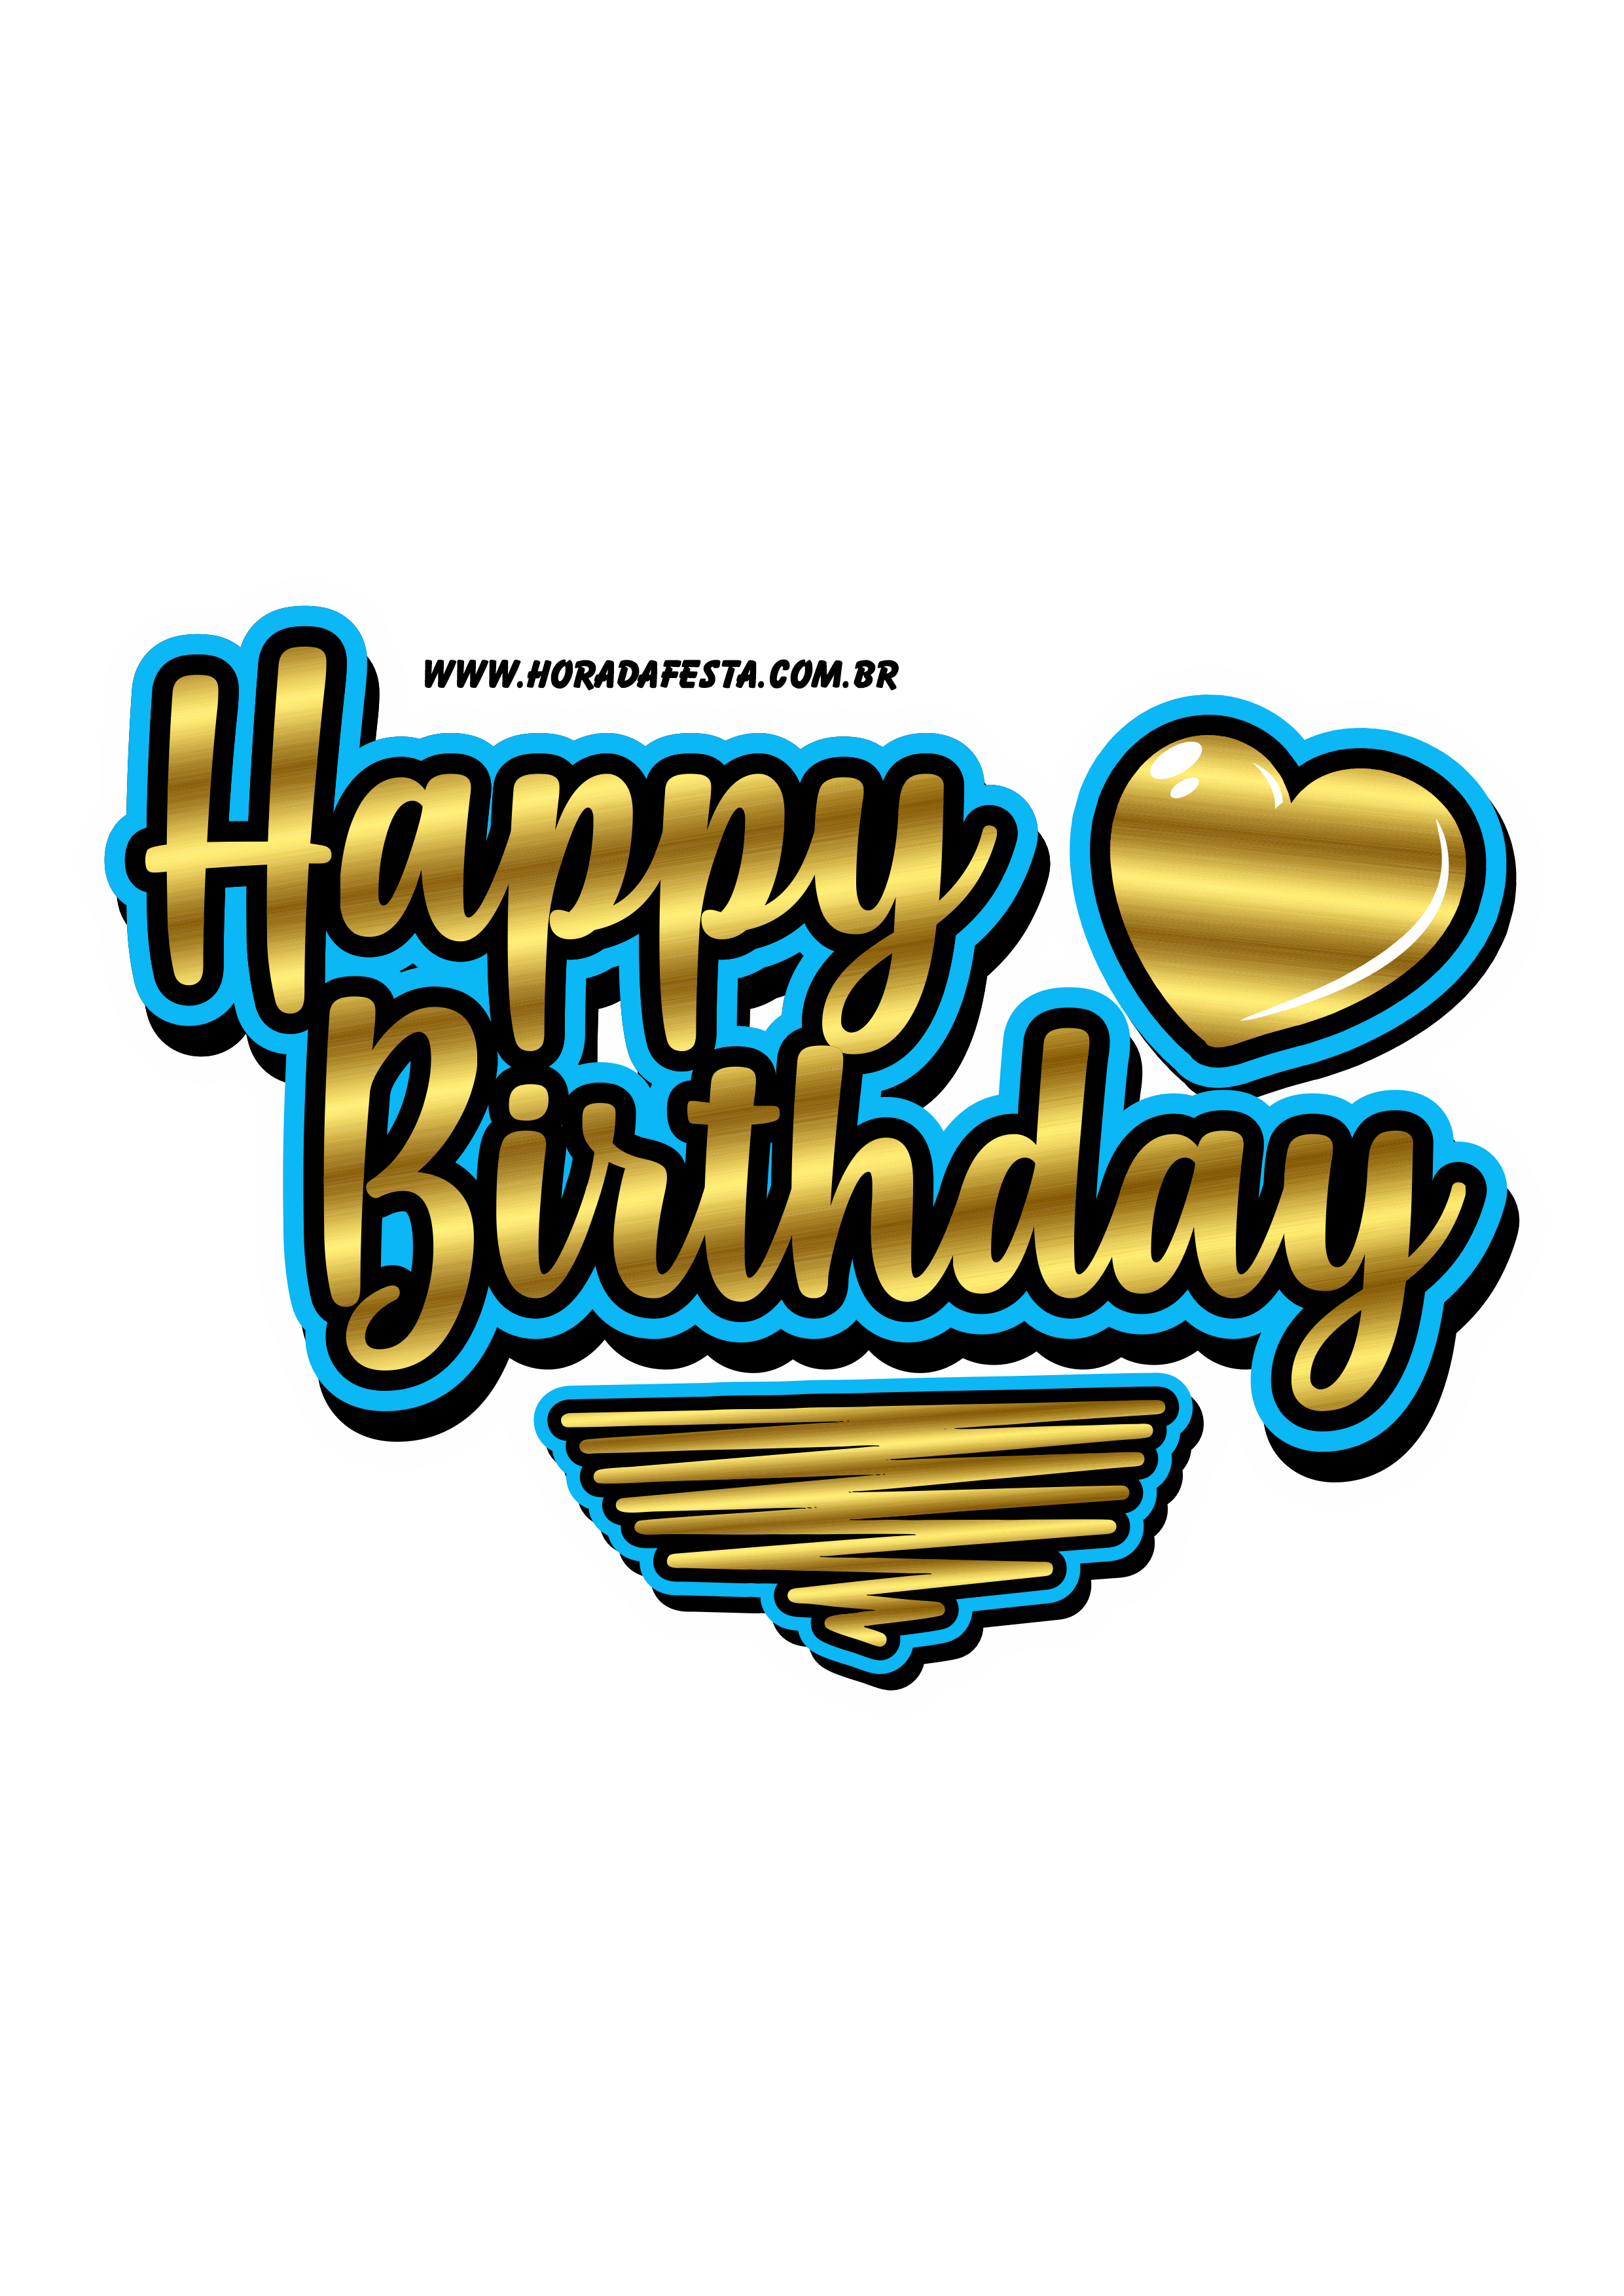 Logo Happy Birthday dourado com azul png